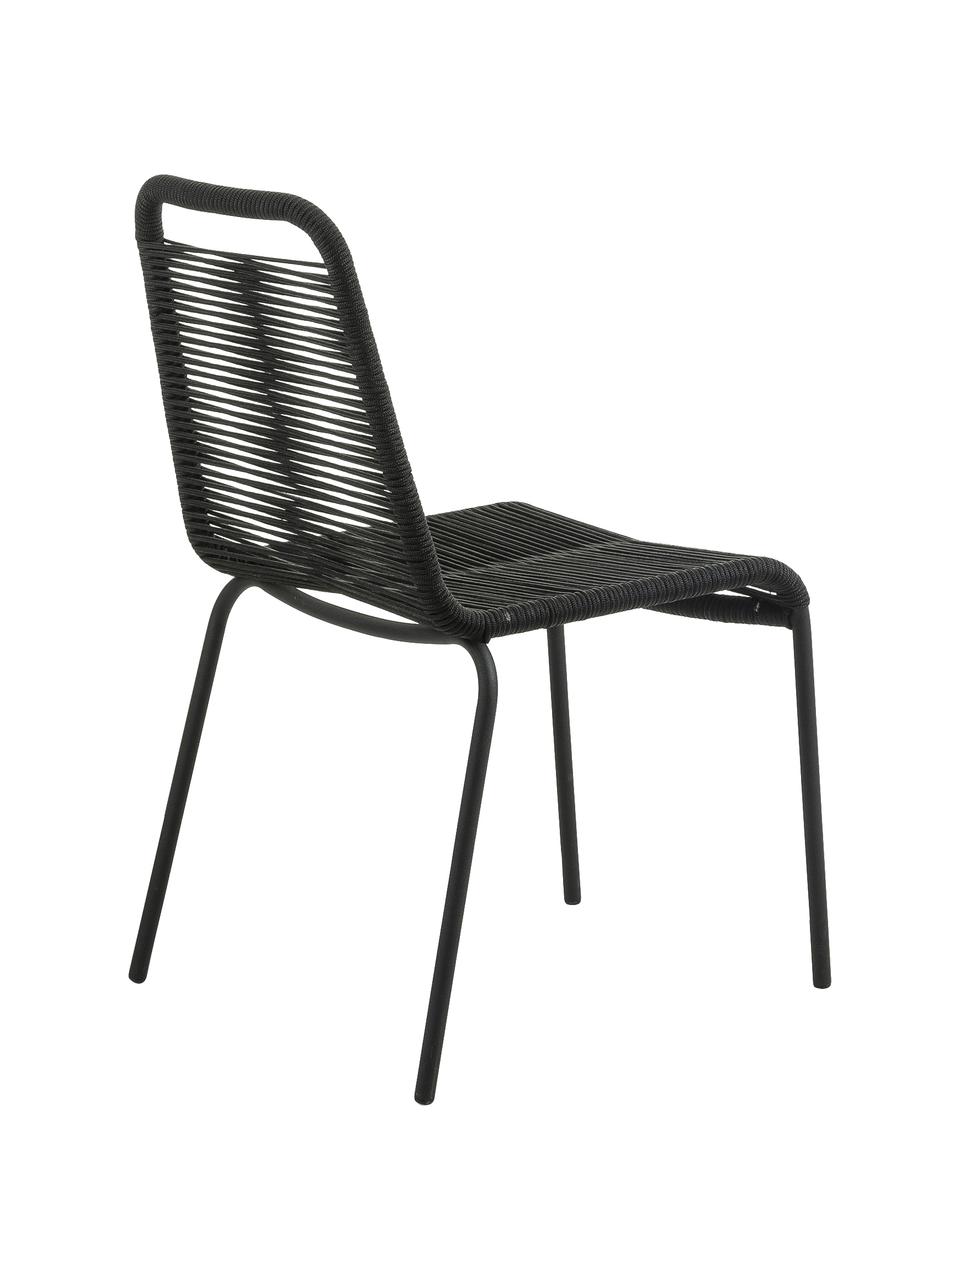 Zahradní židle Lambton, 2 ks, Černá, Š 49 cm, H 59 cm